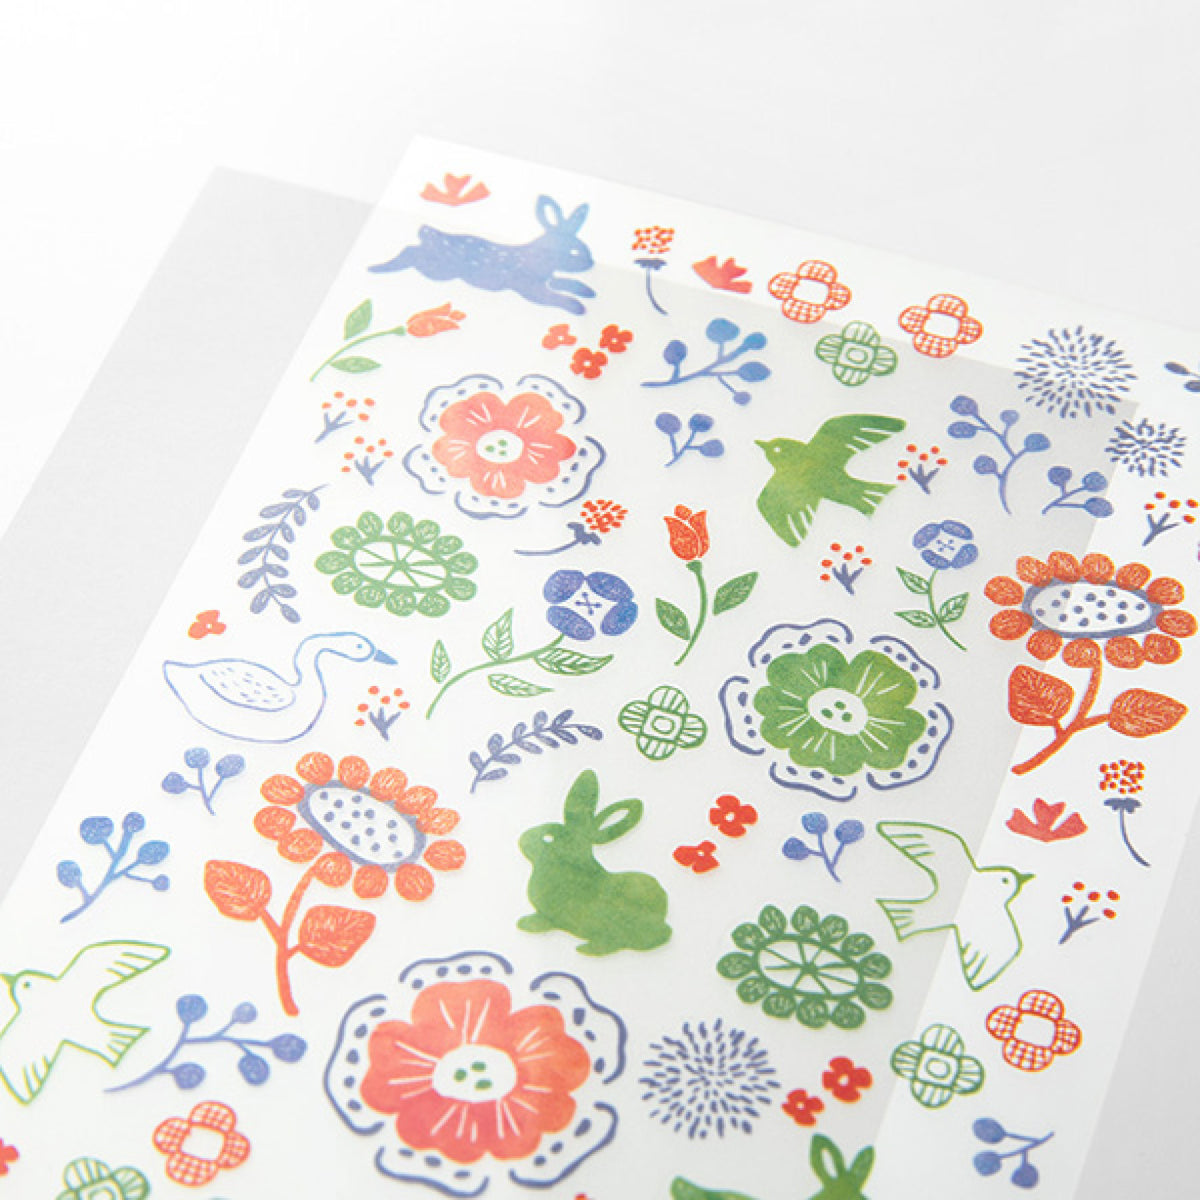 Midori - Sticker Seal - Transfer - Floral (Bright)